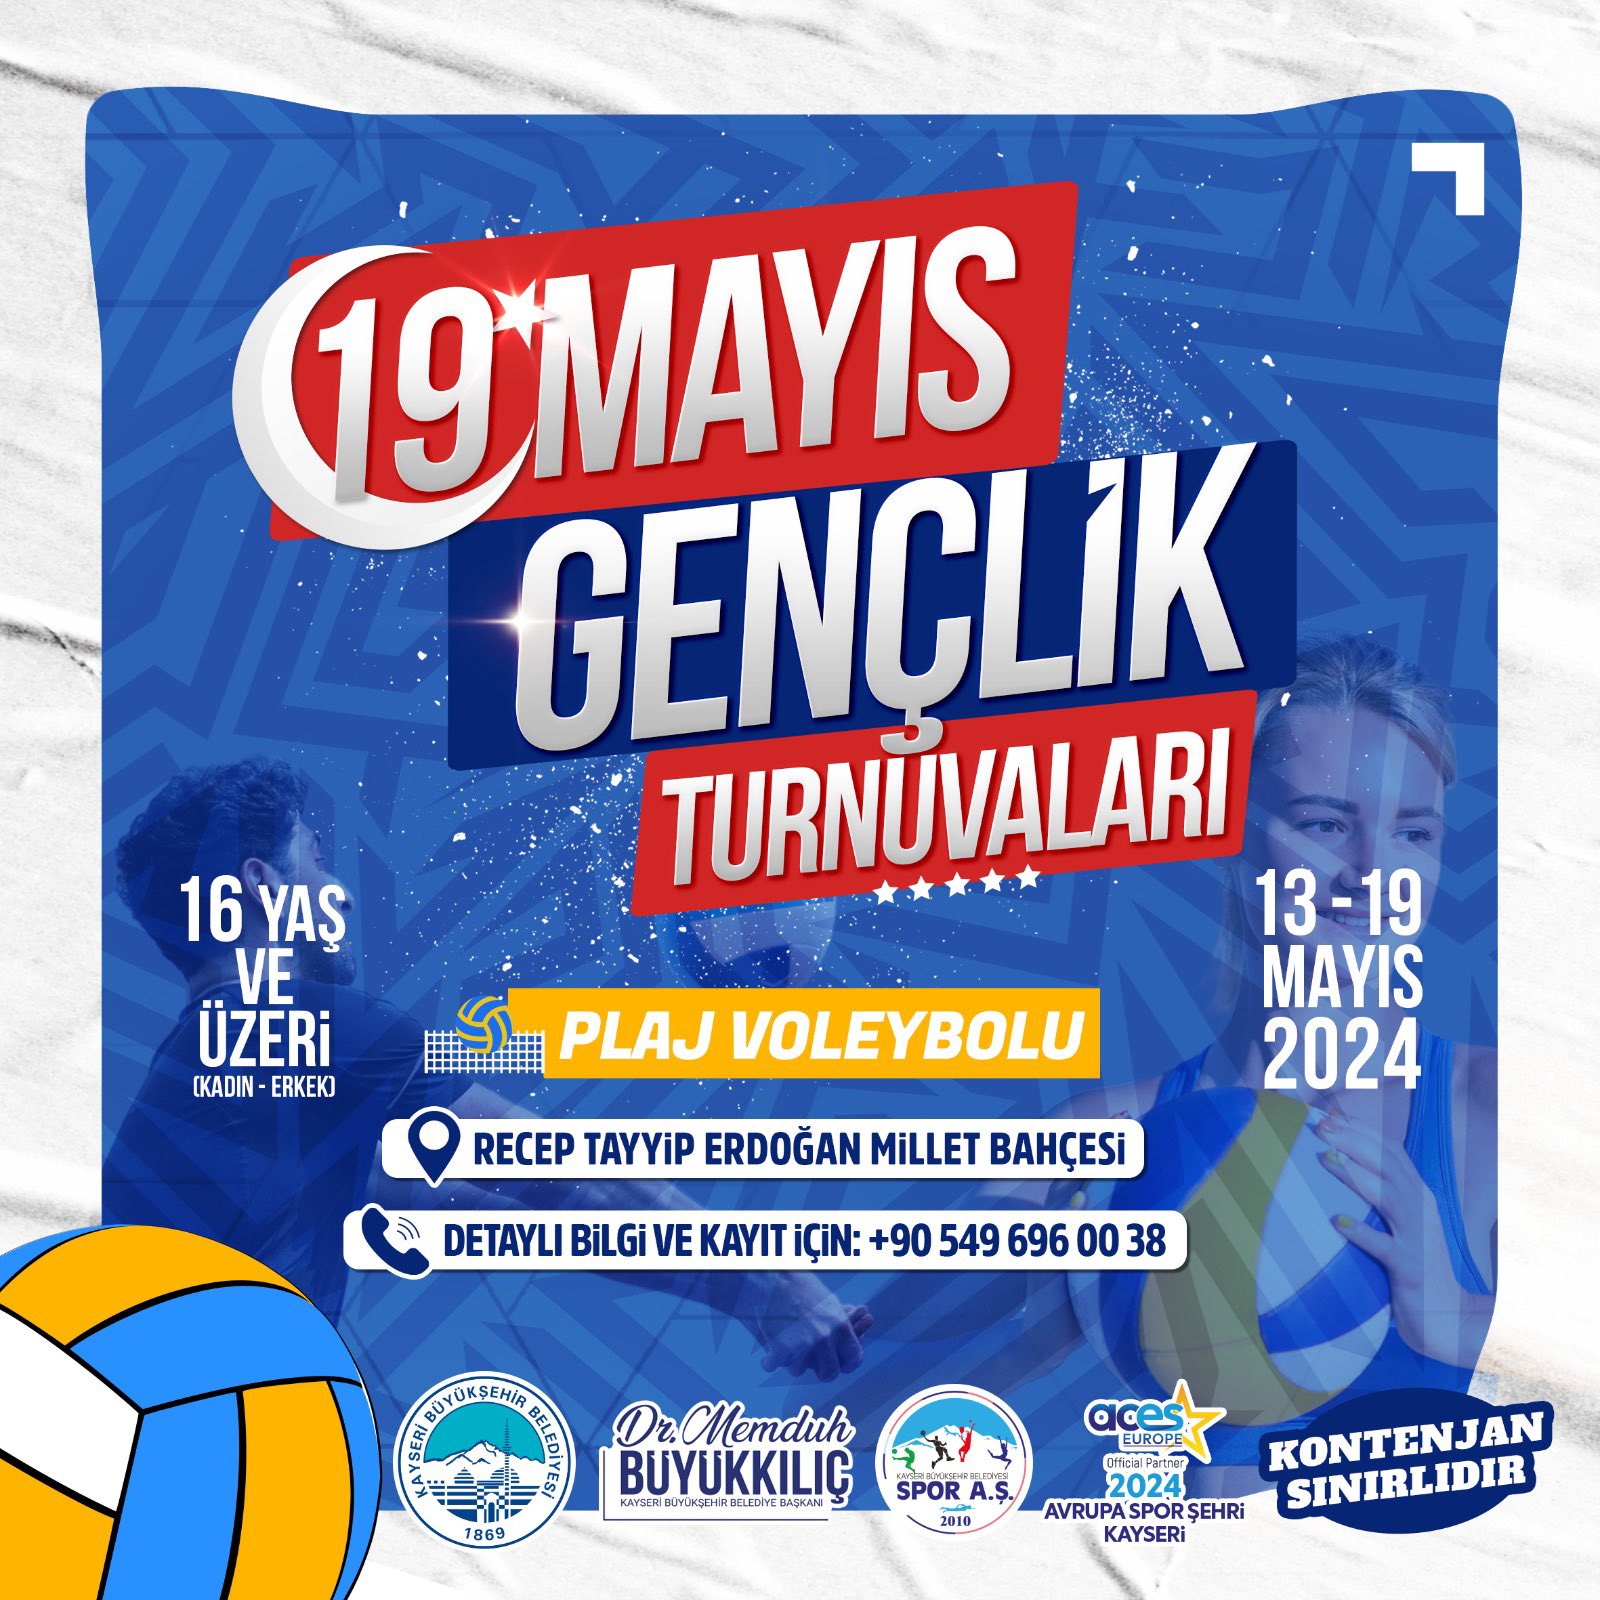 Kayseri’de 19 Mayıs’a özel “plaj voleybolu” turnuvası düzenlenecek